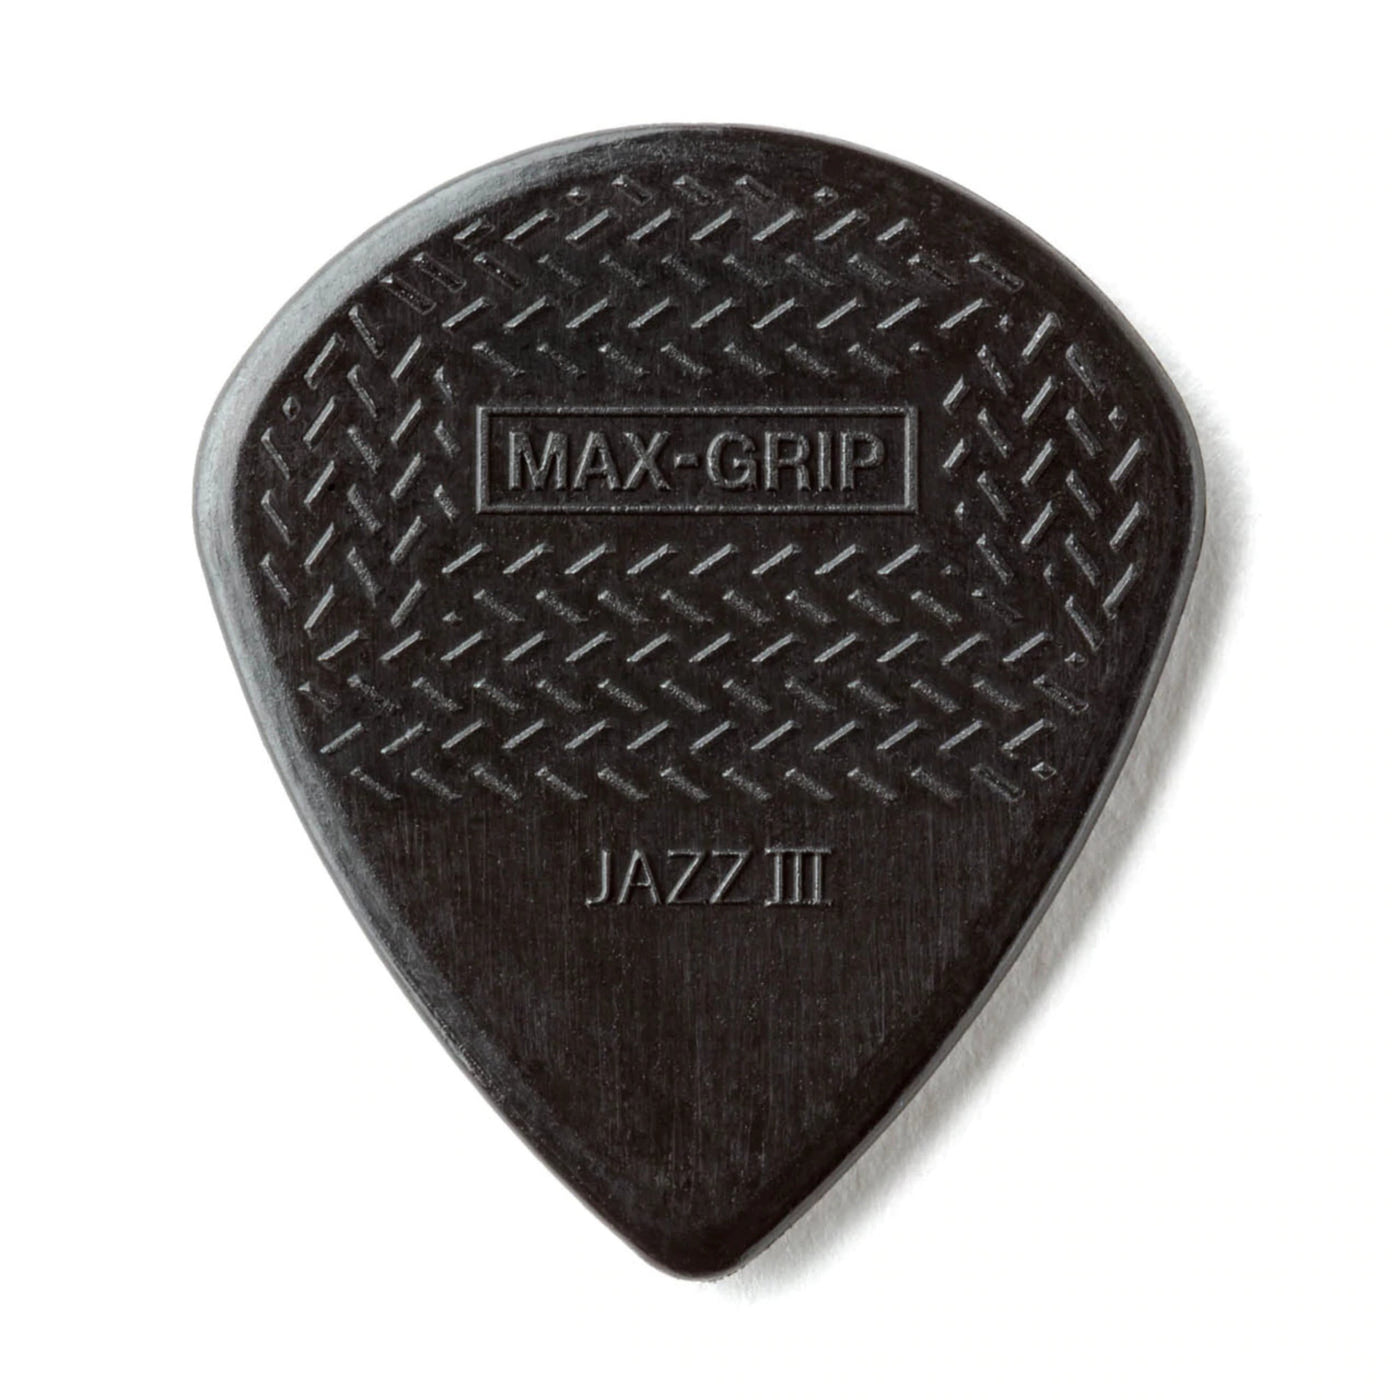 Dunlop 471P3S Max-Grip Jazz lll Stiffo Pick- 6 Pack